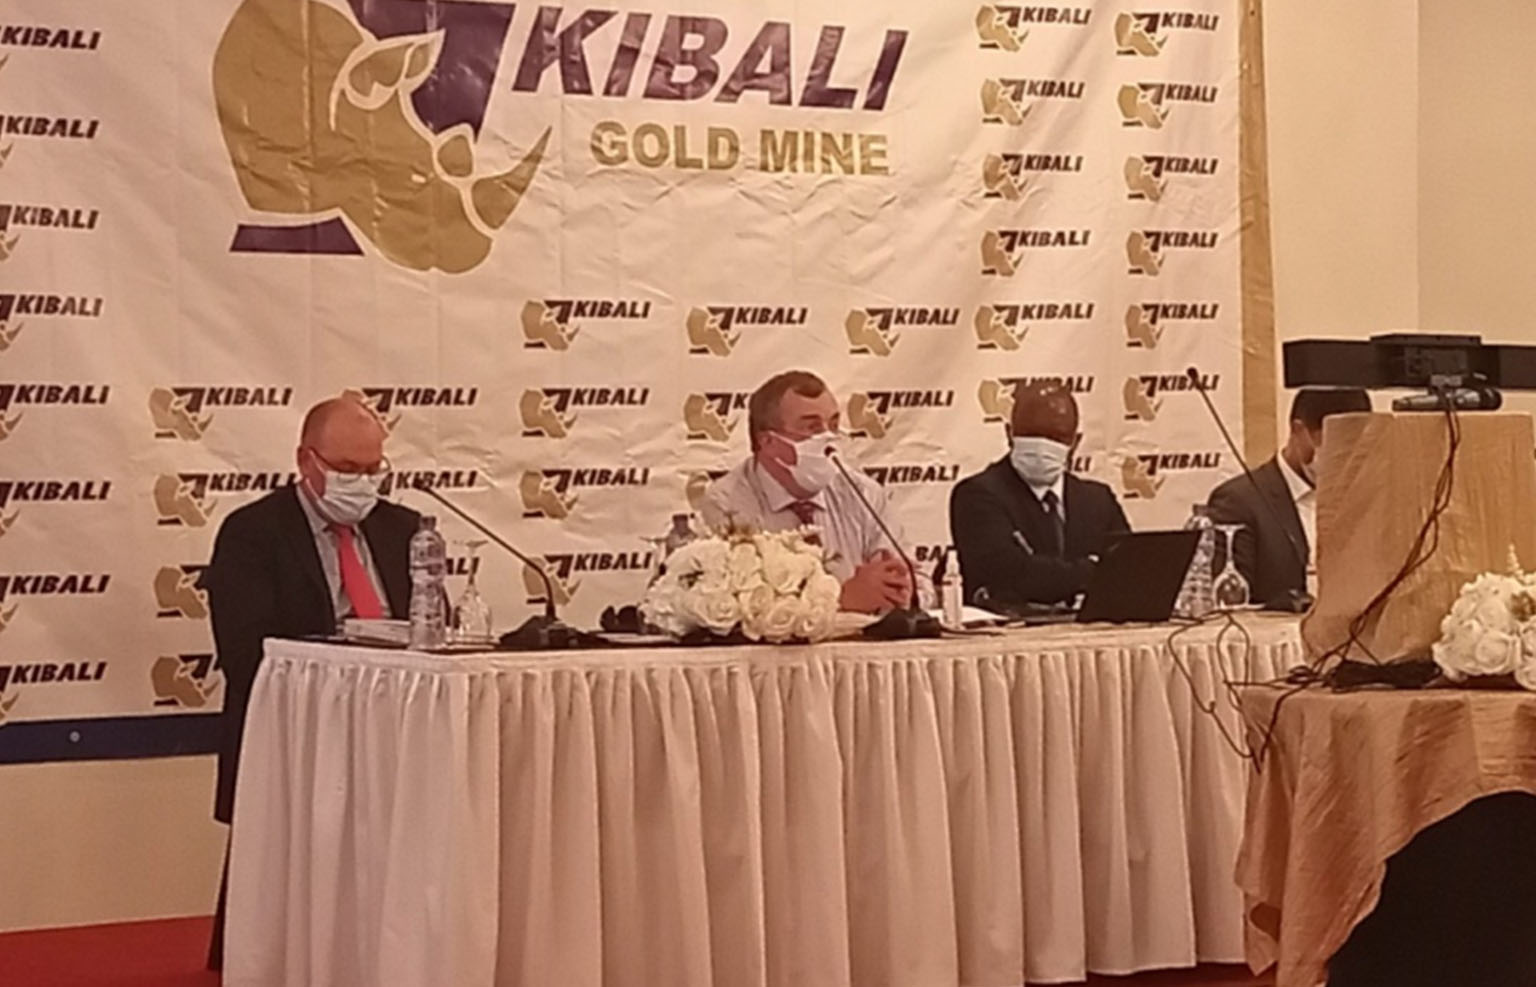 RDC : Kibali Gold Mine annonce ses chiffres clés de 2021 avec une production de 812.152 onces d’or